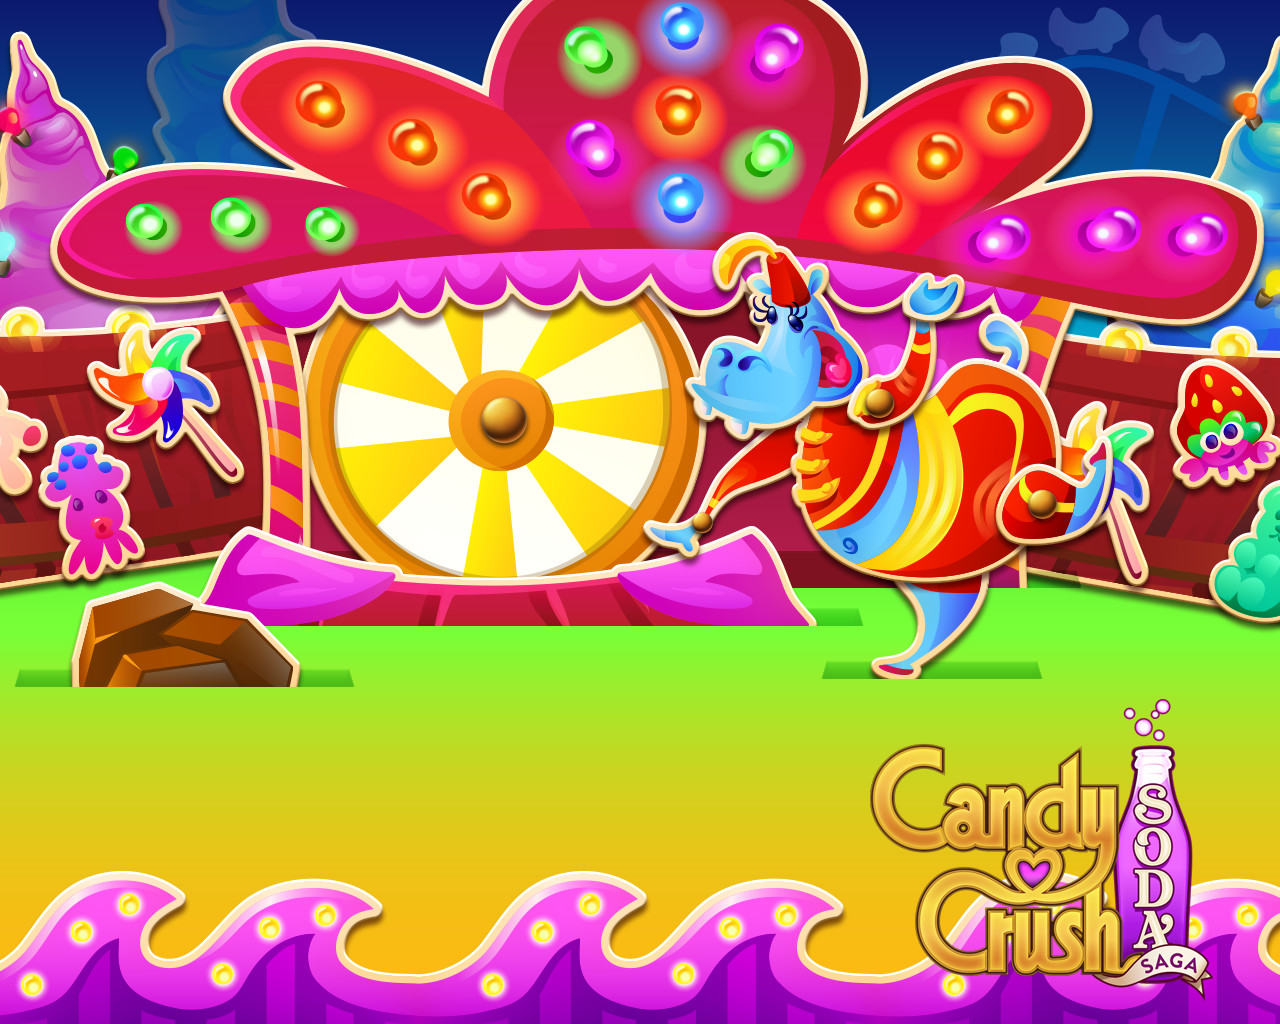 Candy Crush Soda saga on CandyCrushFanGroup - DeviantArt